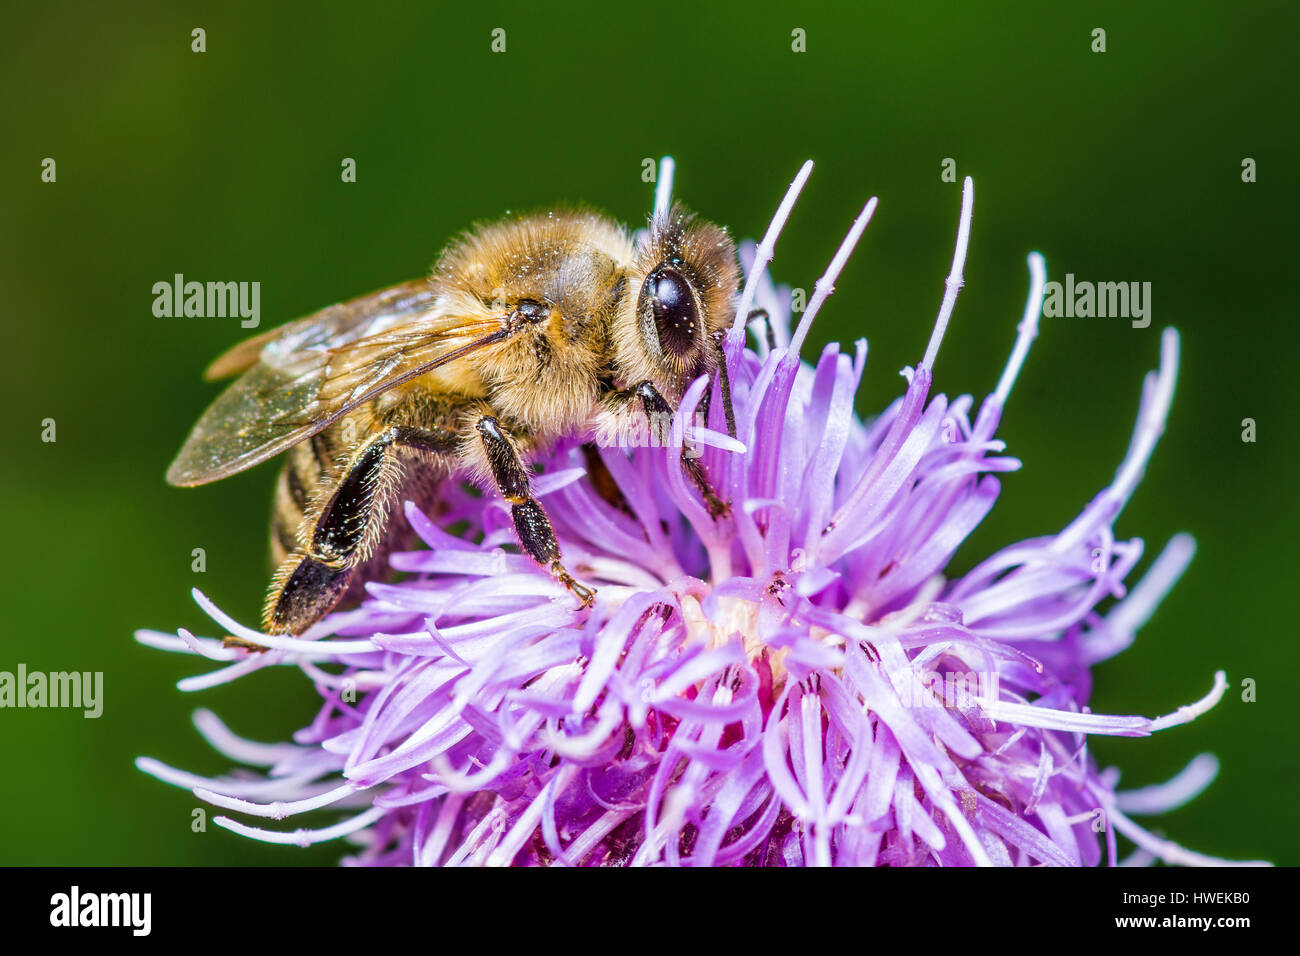 Honeybee on Agrimony Flower Stock Photo